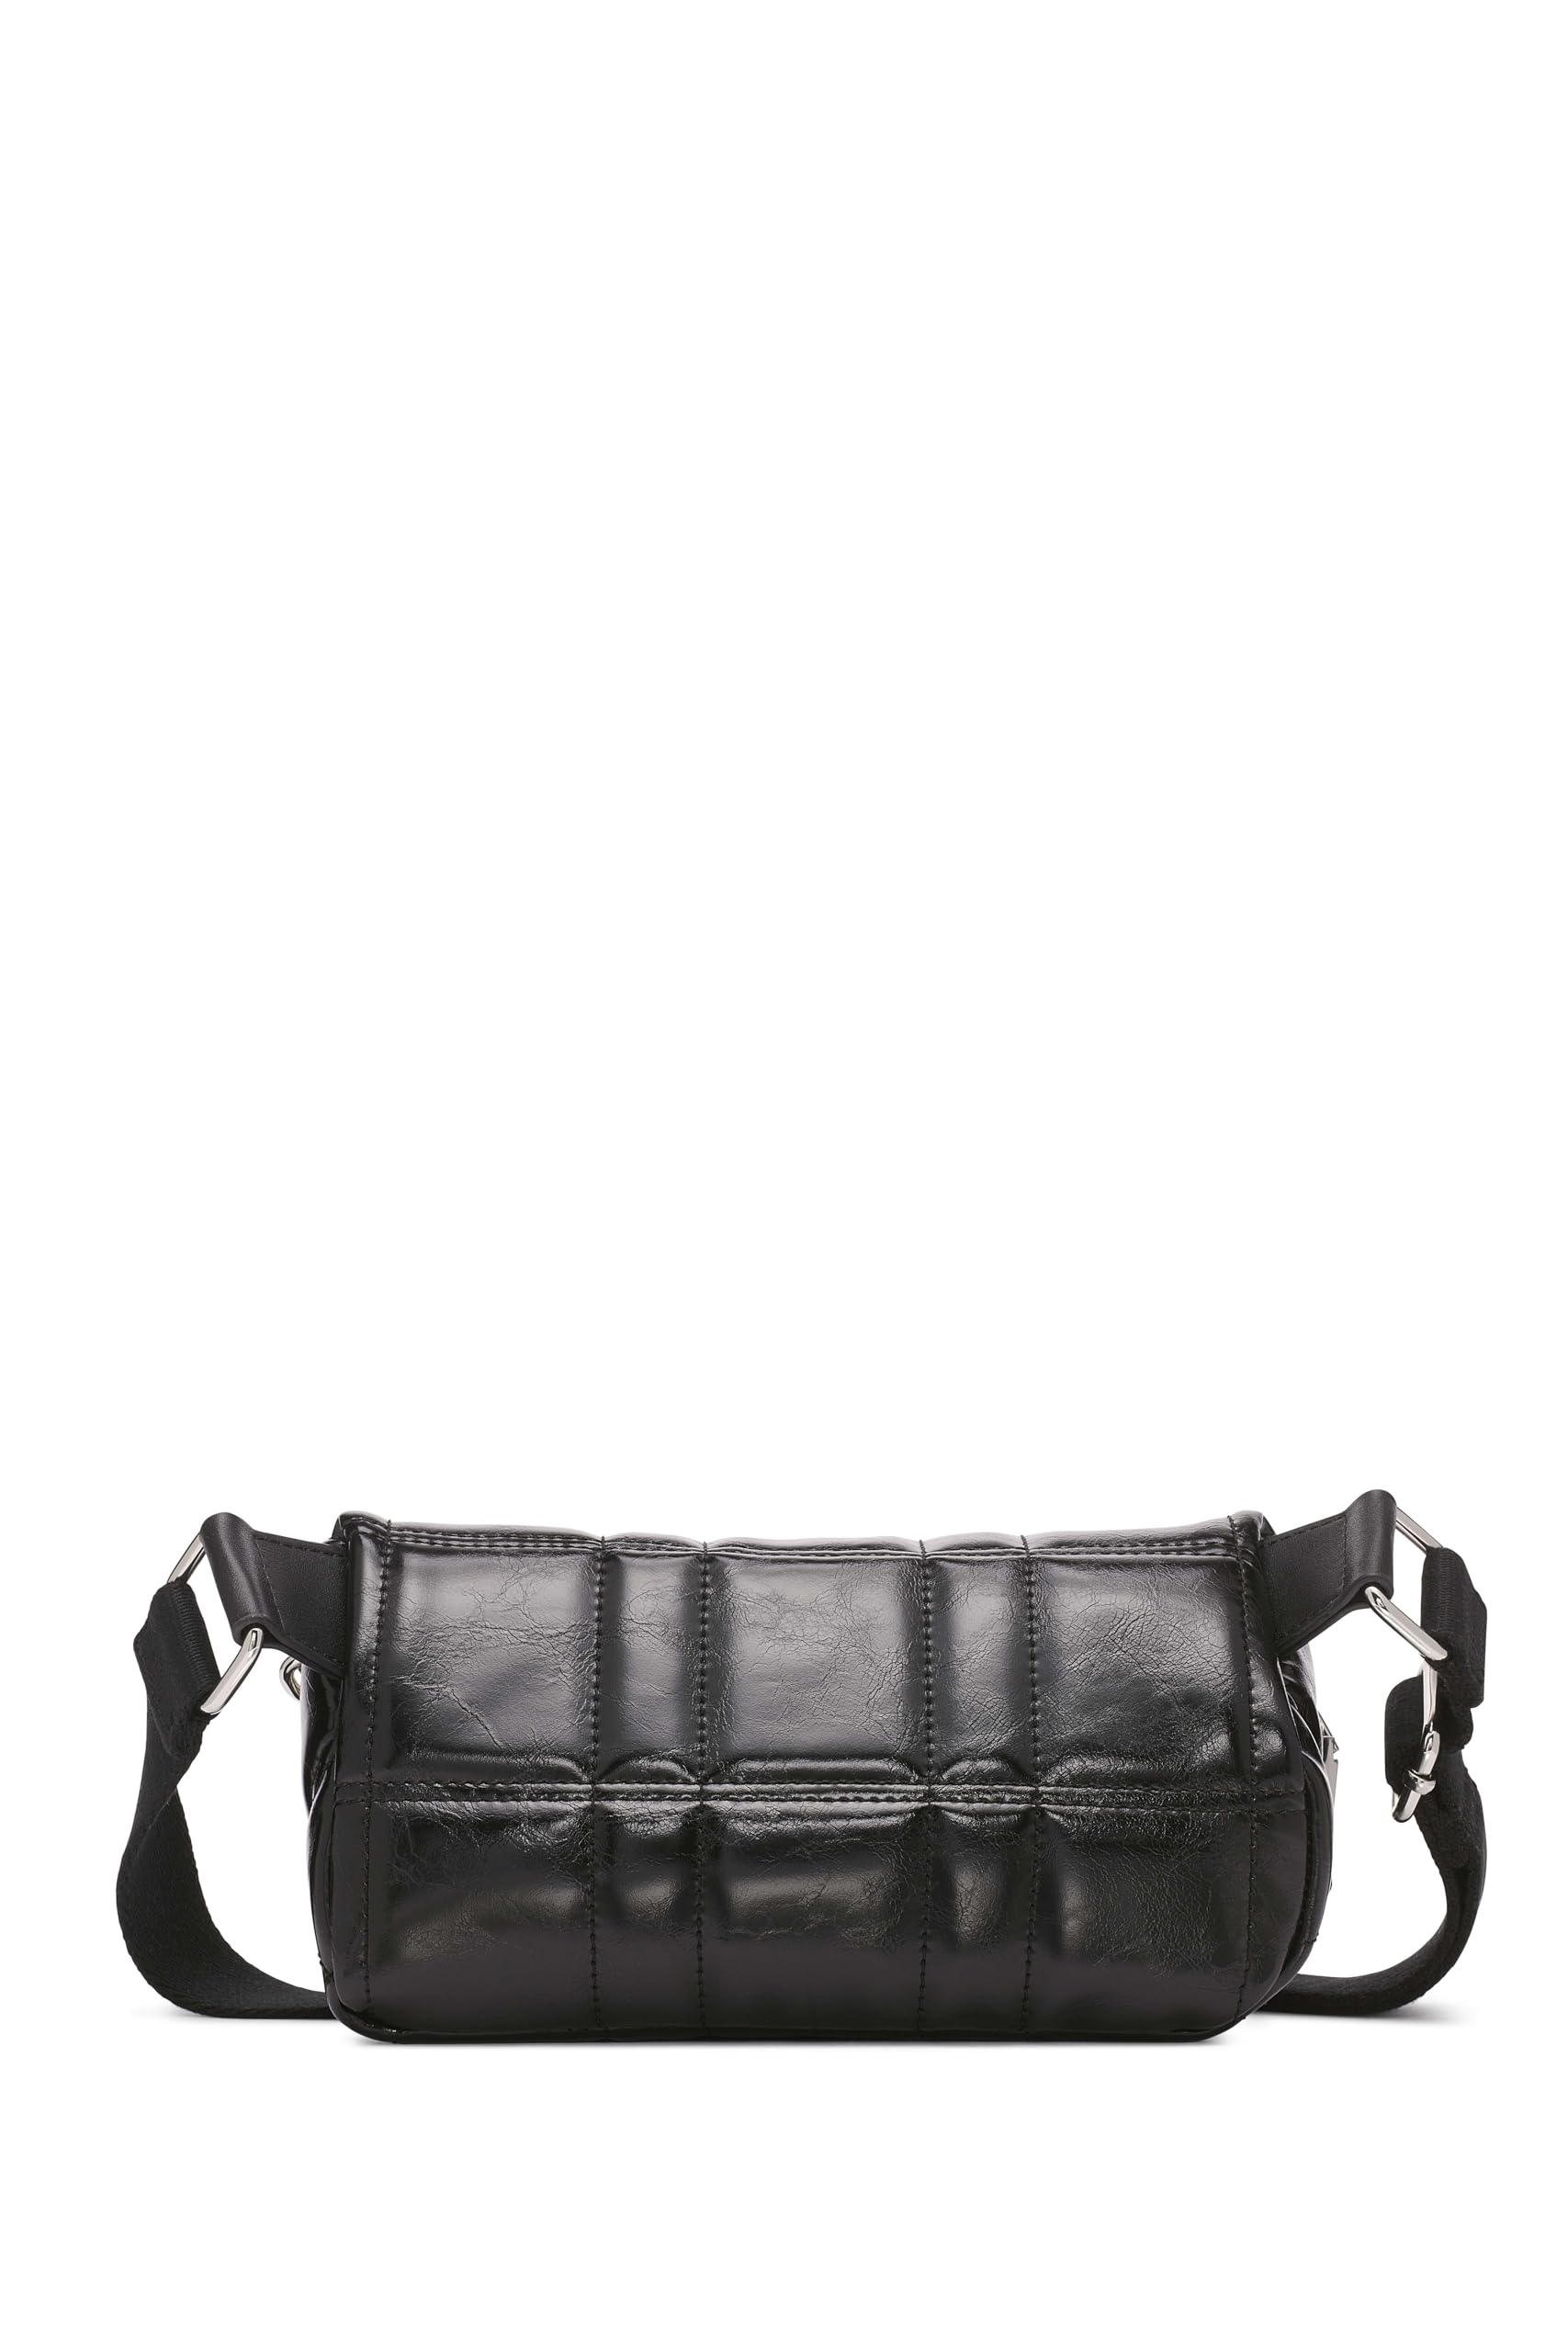 Calvin Klein Women's Rain Organizational Belt Bag